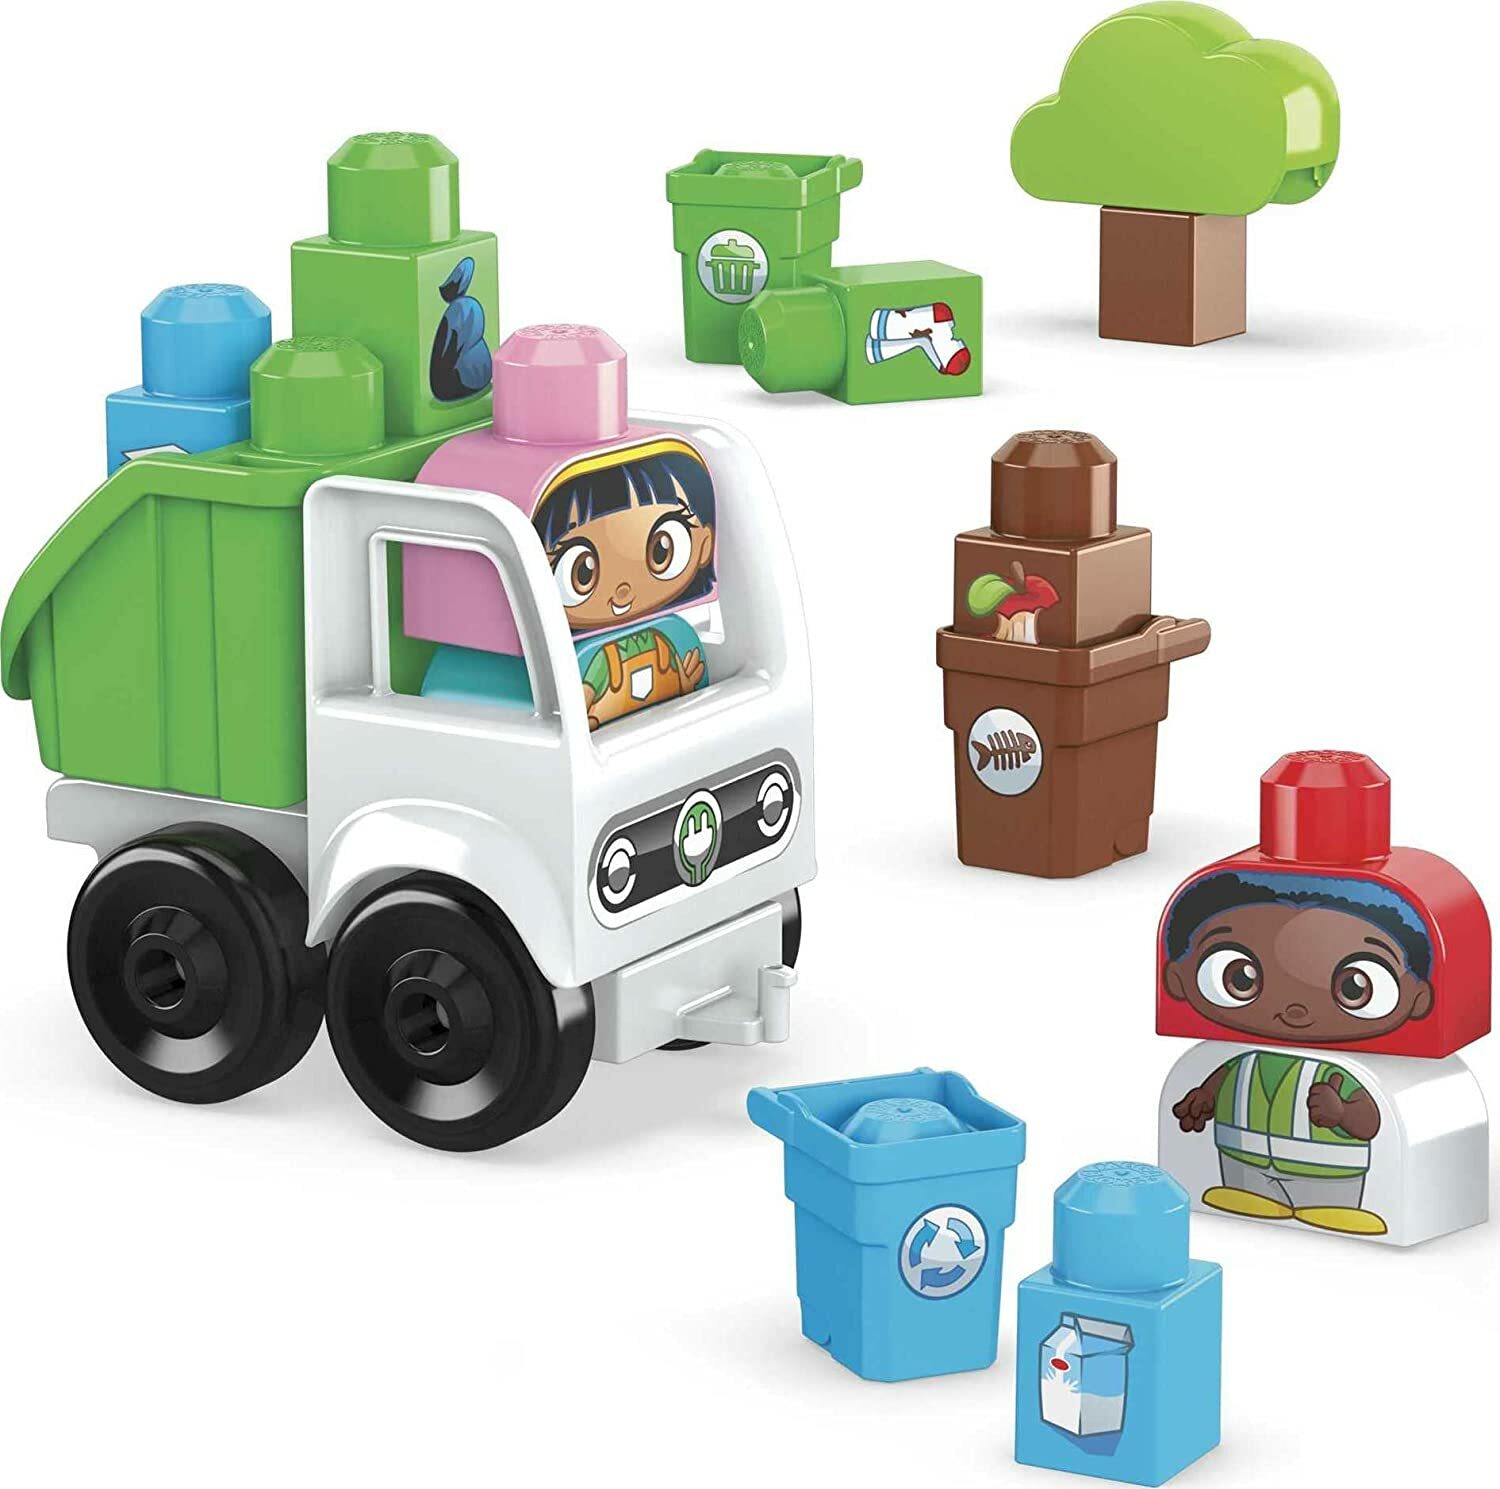 Mattel Mega bloks zelené město oddíl třídění a recyklace HDL06